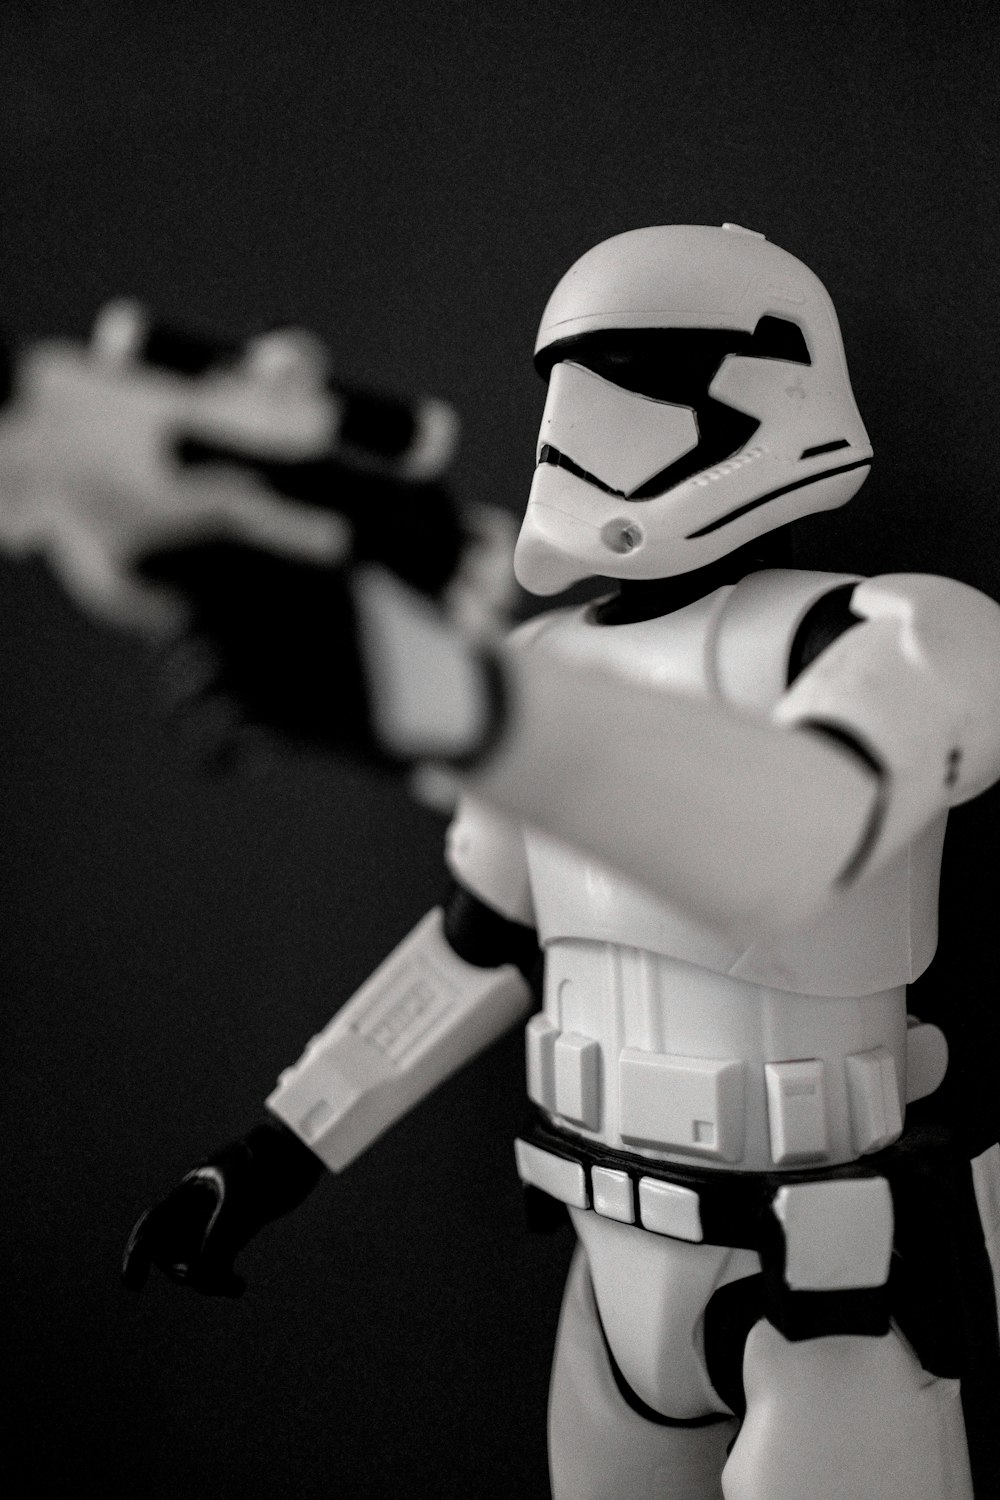 stormtrooper action figure